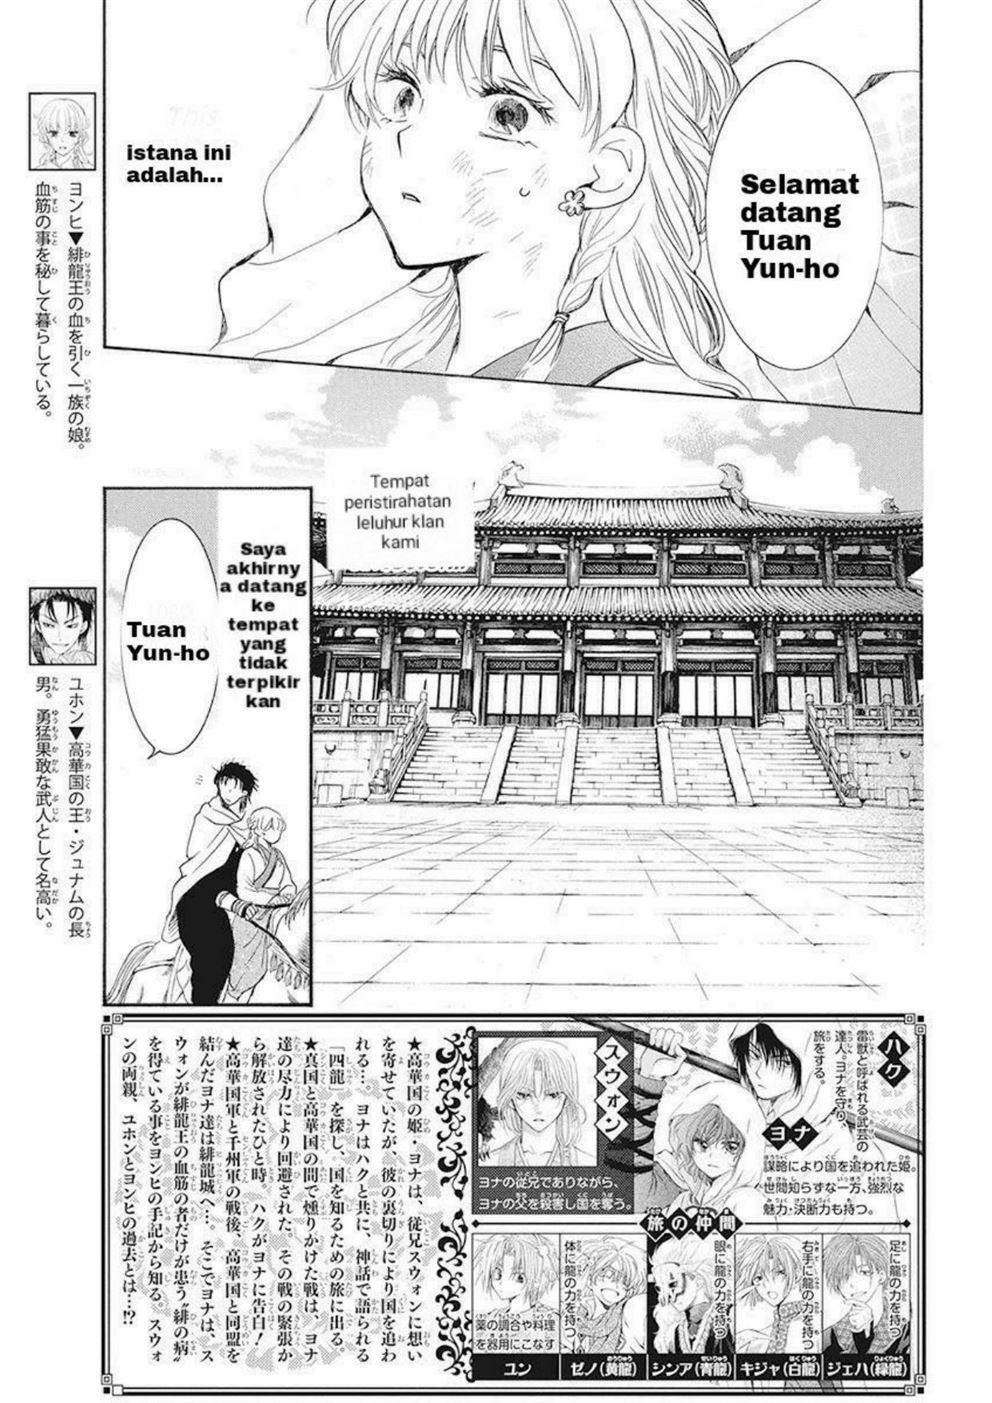 Baca Komik Akatsuki no Yona Chapter 191 Gambar 1